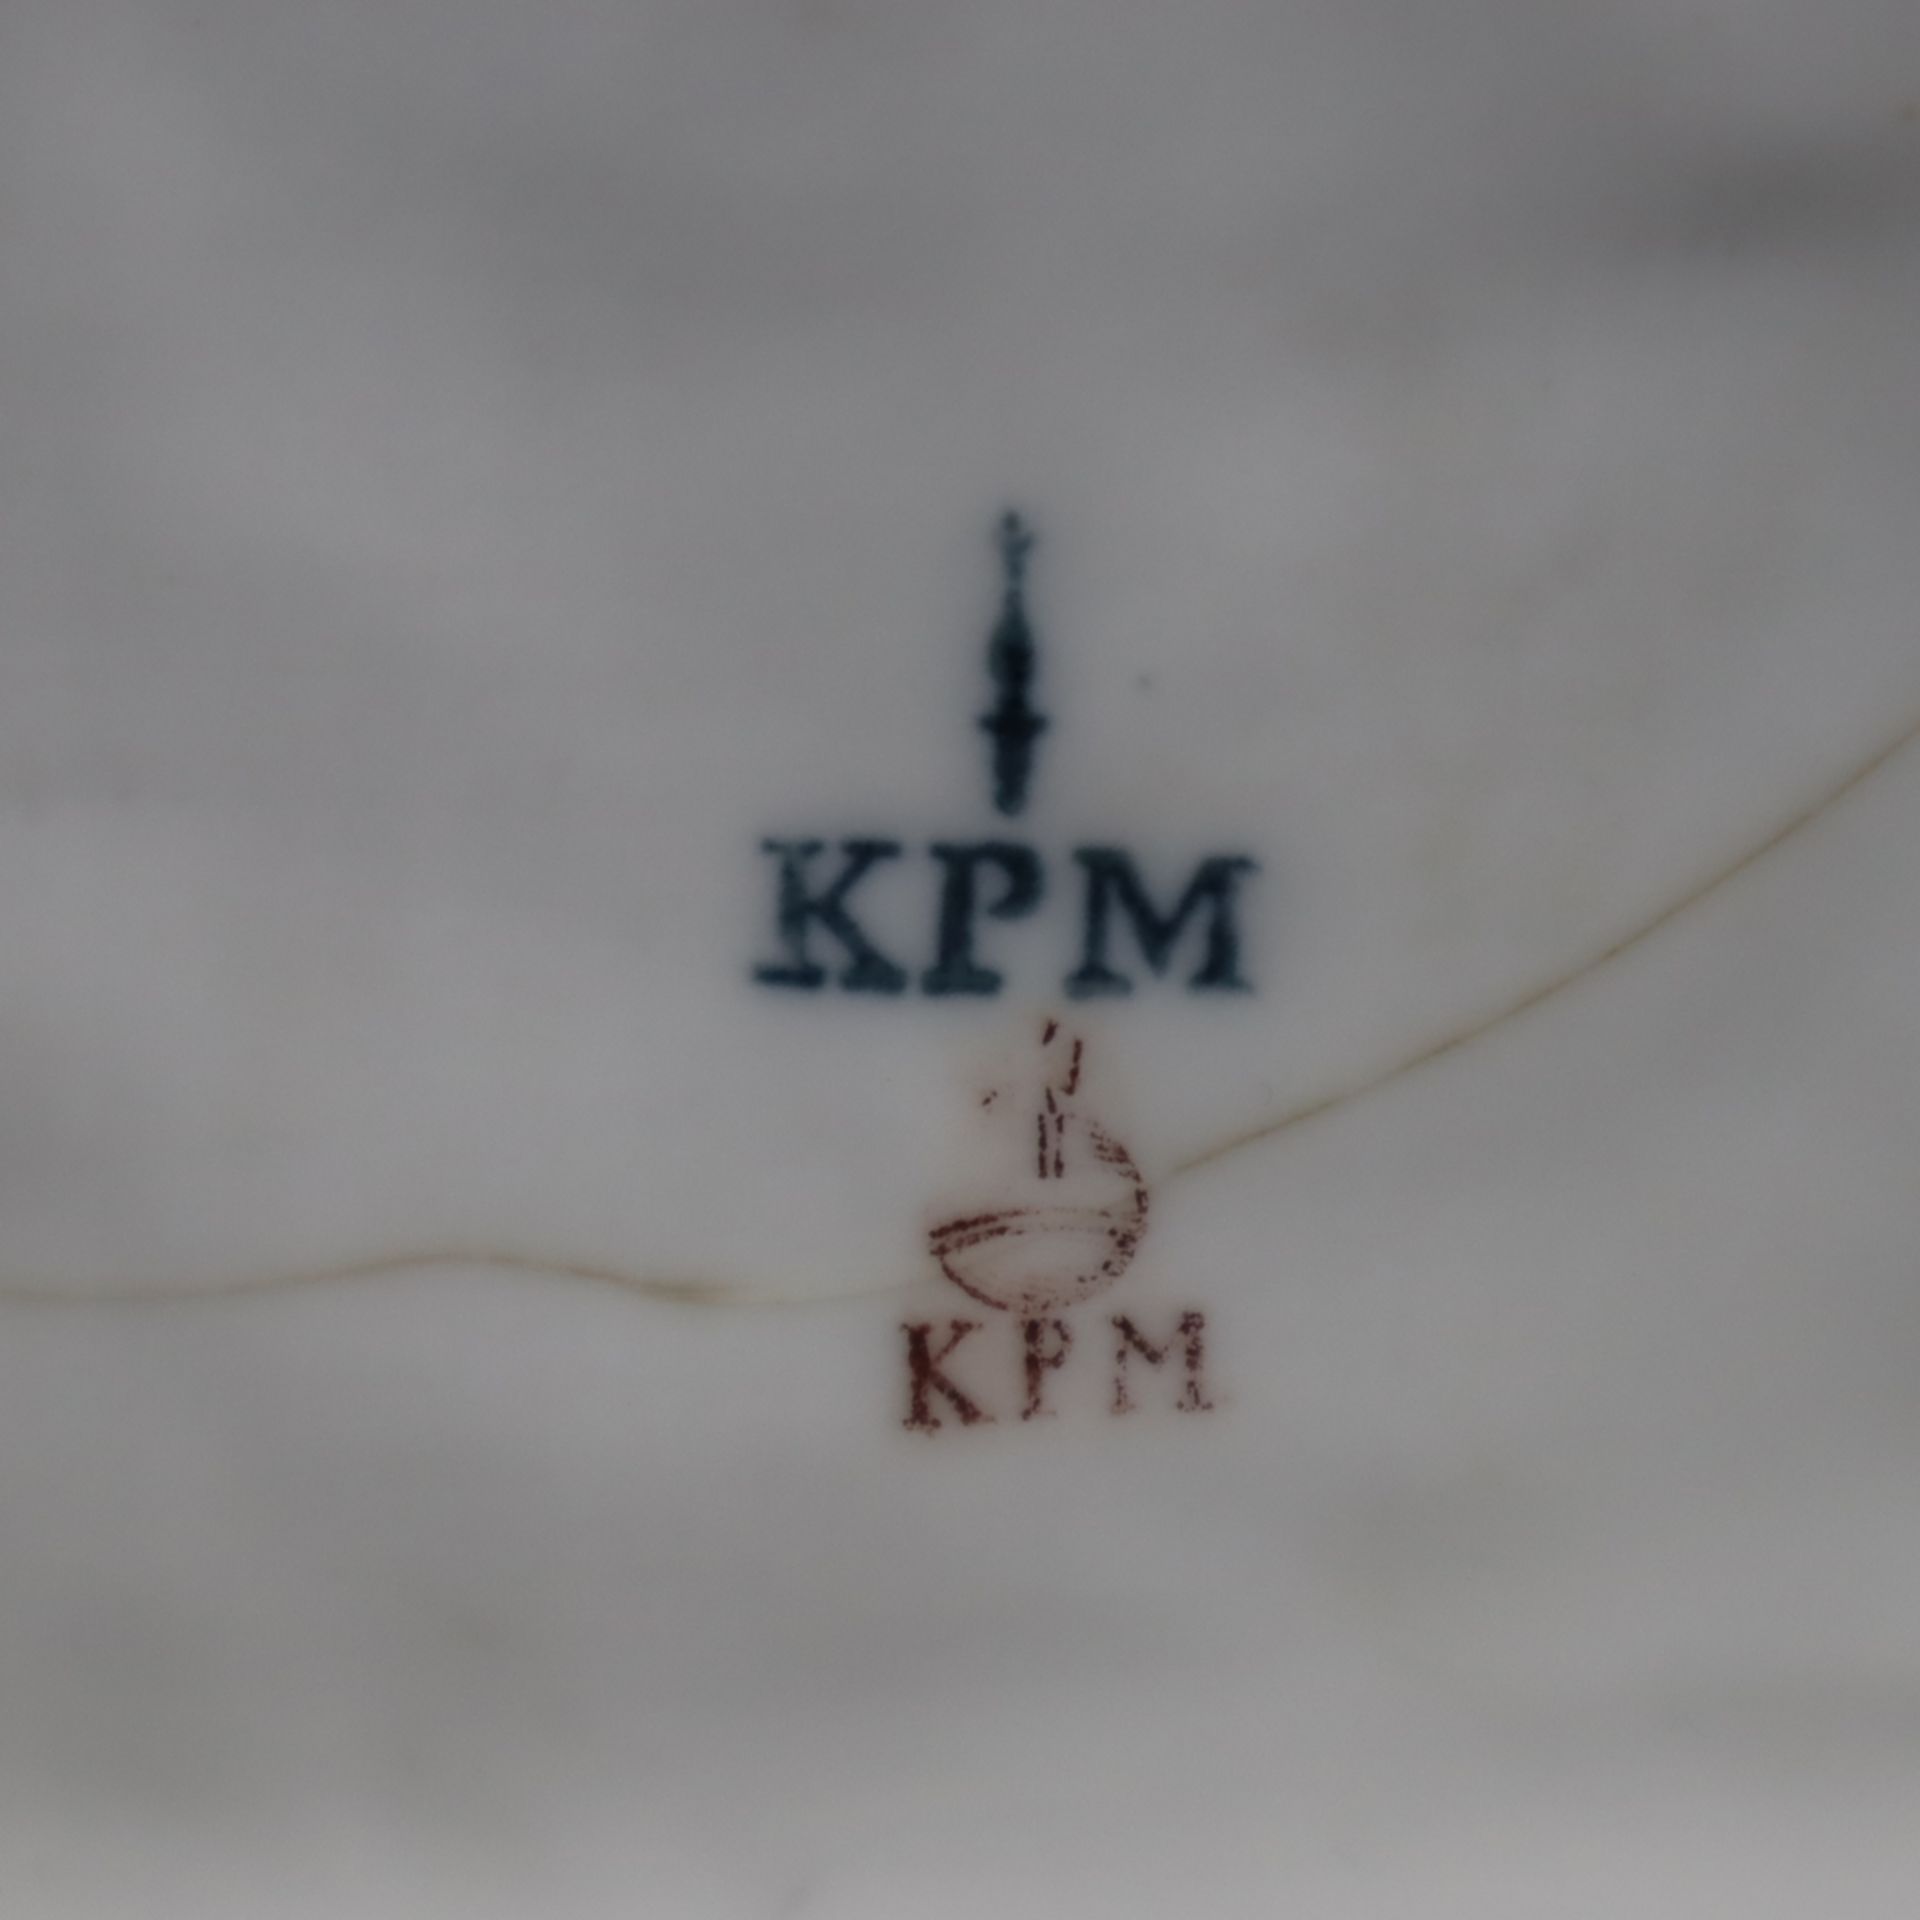 Sitzender Jäger - blaue Zeptermarke mit "KPM" und rote Reichsapfelmarke "KPM", 19.Jh., Porzellan, p - Image 13 of 13